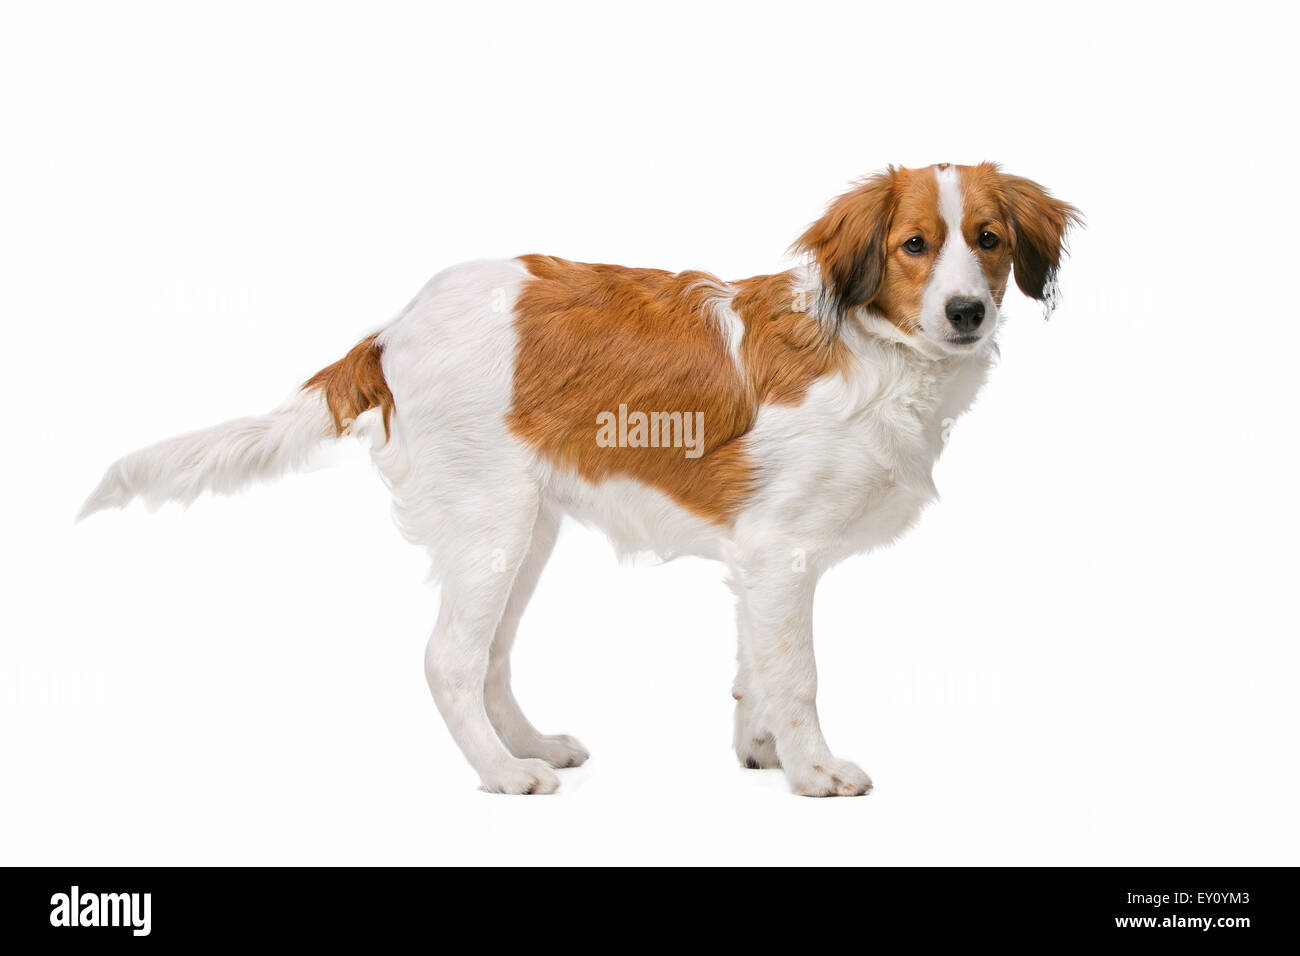 Kooiker, chien race de chien néerlandais, devant un fond blanc Banque D'Images